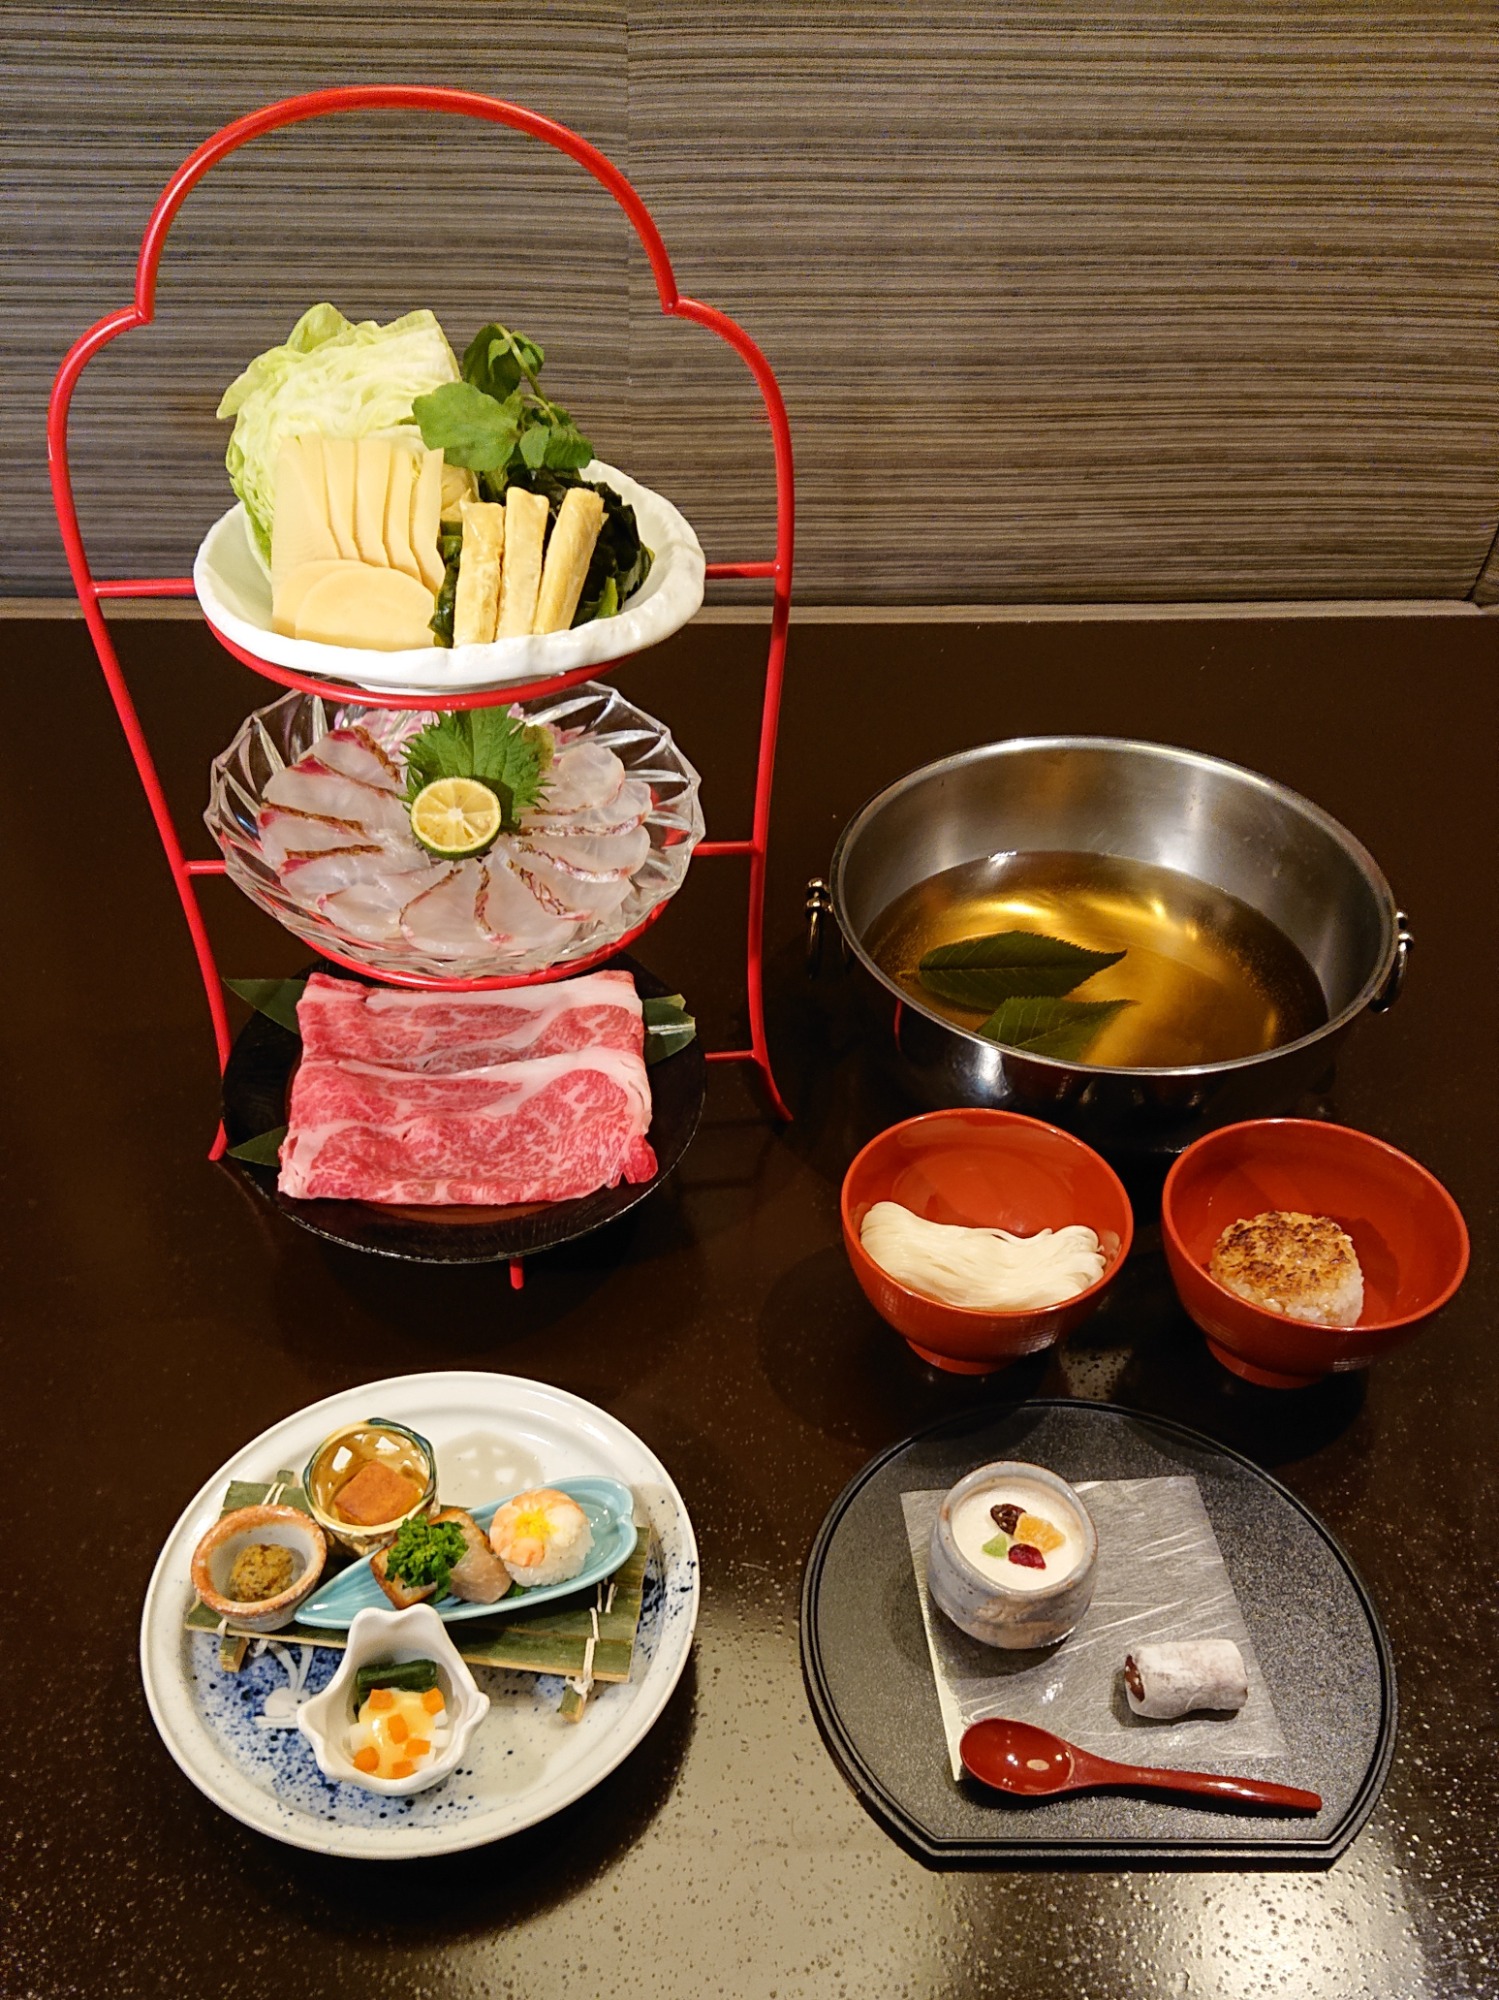 旬の食材満載 4月限定の春鍋 桜鯛と和牛の春しゃぶ鍋コース Grand Front Osaka Shops Restaurants